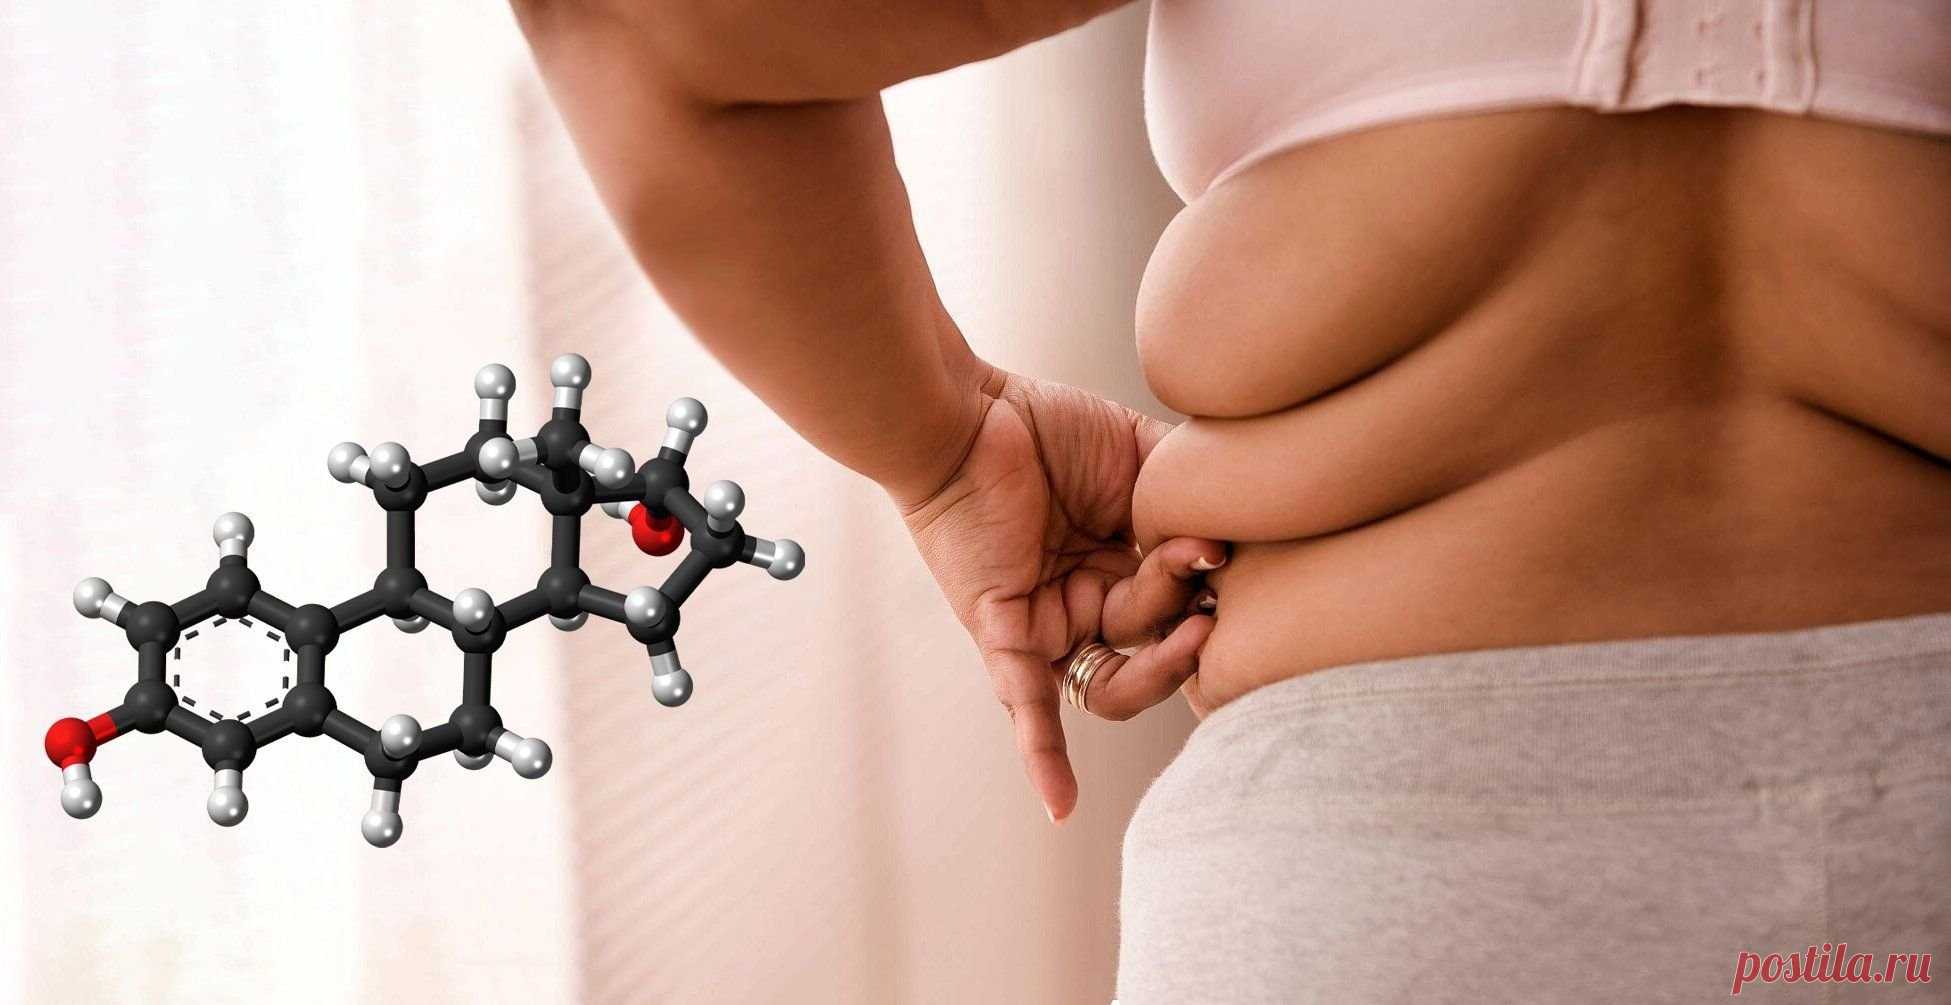 Какие гормоны мешают похудеть женщине, как это исправить без лекарств Гормоны и вес – понятия взаимосвязанные. Если хотите похудеть правильно, без вреда для здоровья, начните с главного – приведите в норму гормоны, влияющие на вес. Как это сделать без лекарств...